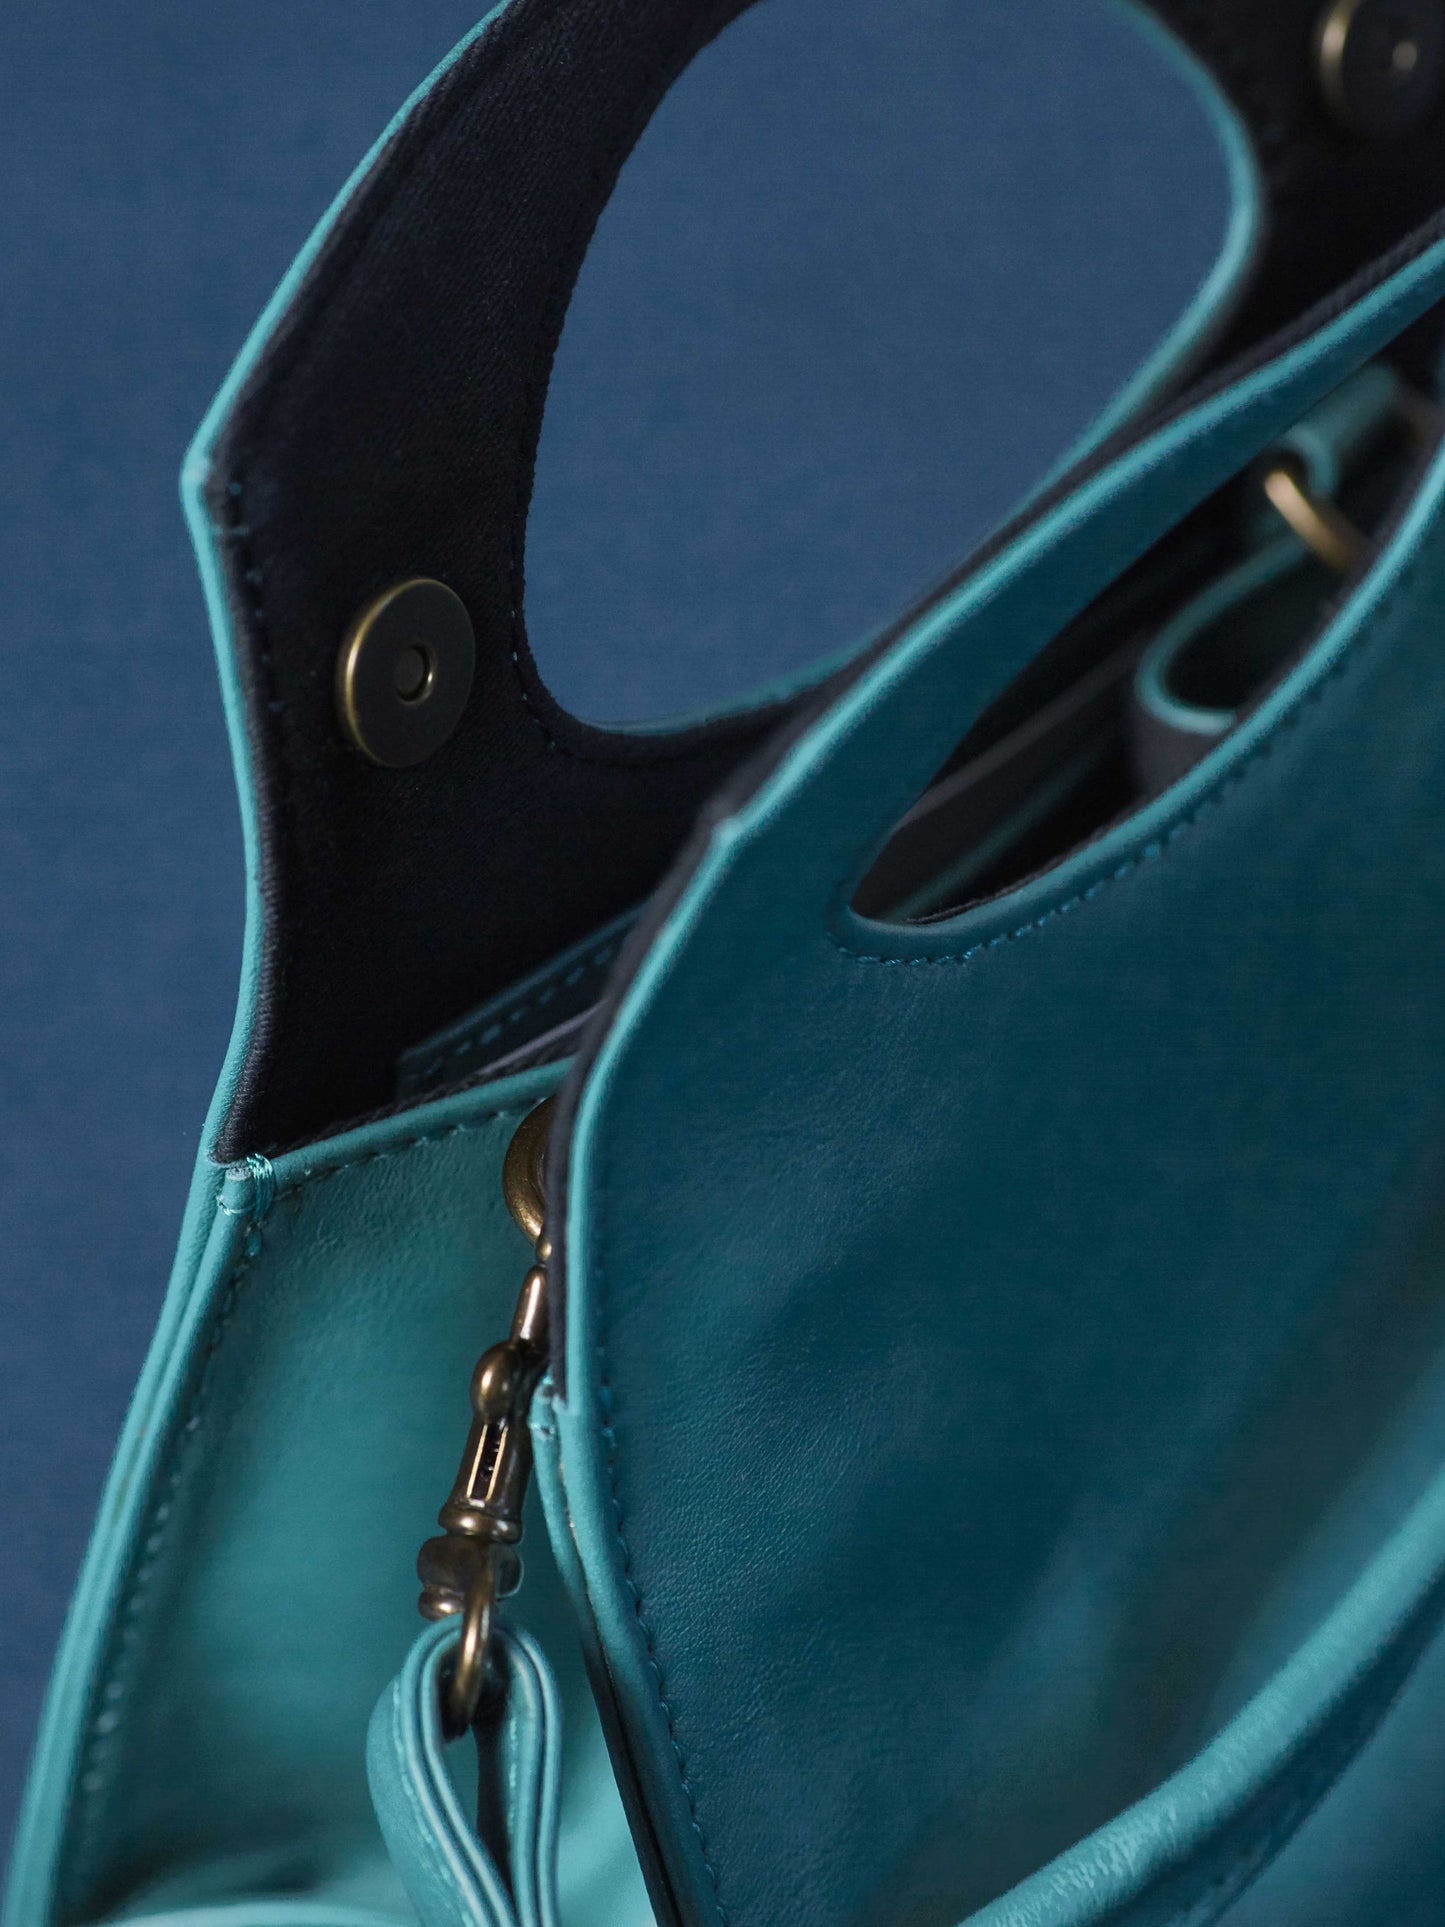 Leather-Crossbody Handbag- Emerald Color-by-PaytonJames-Nashville-designer. inside of bag